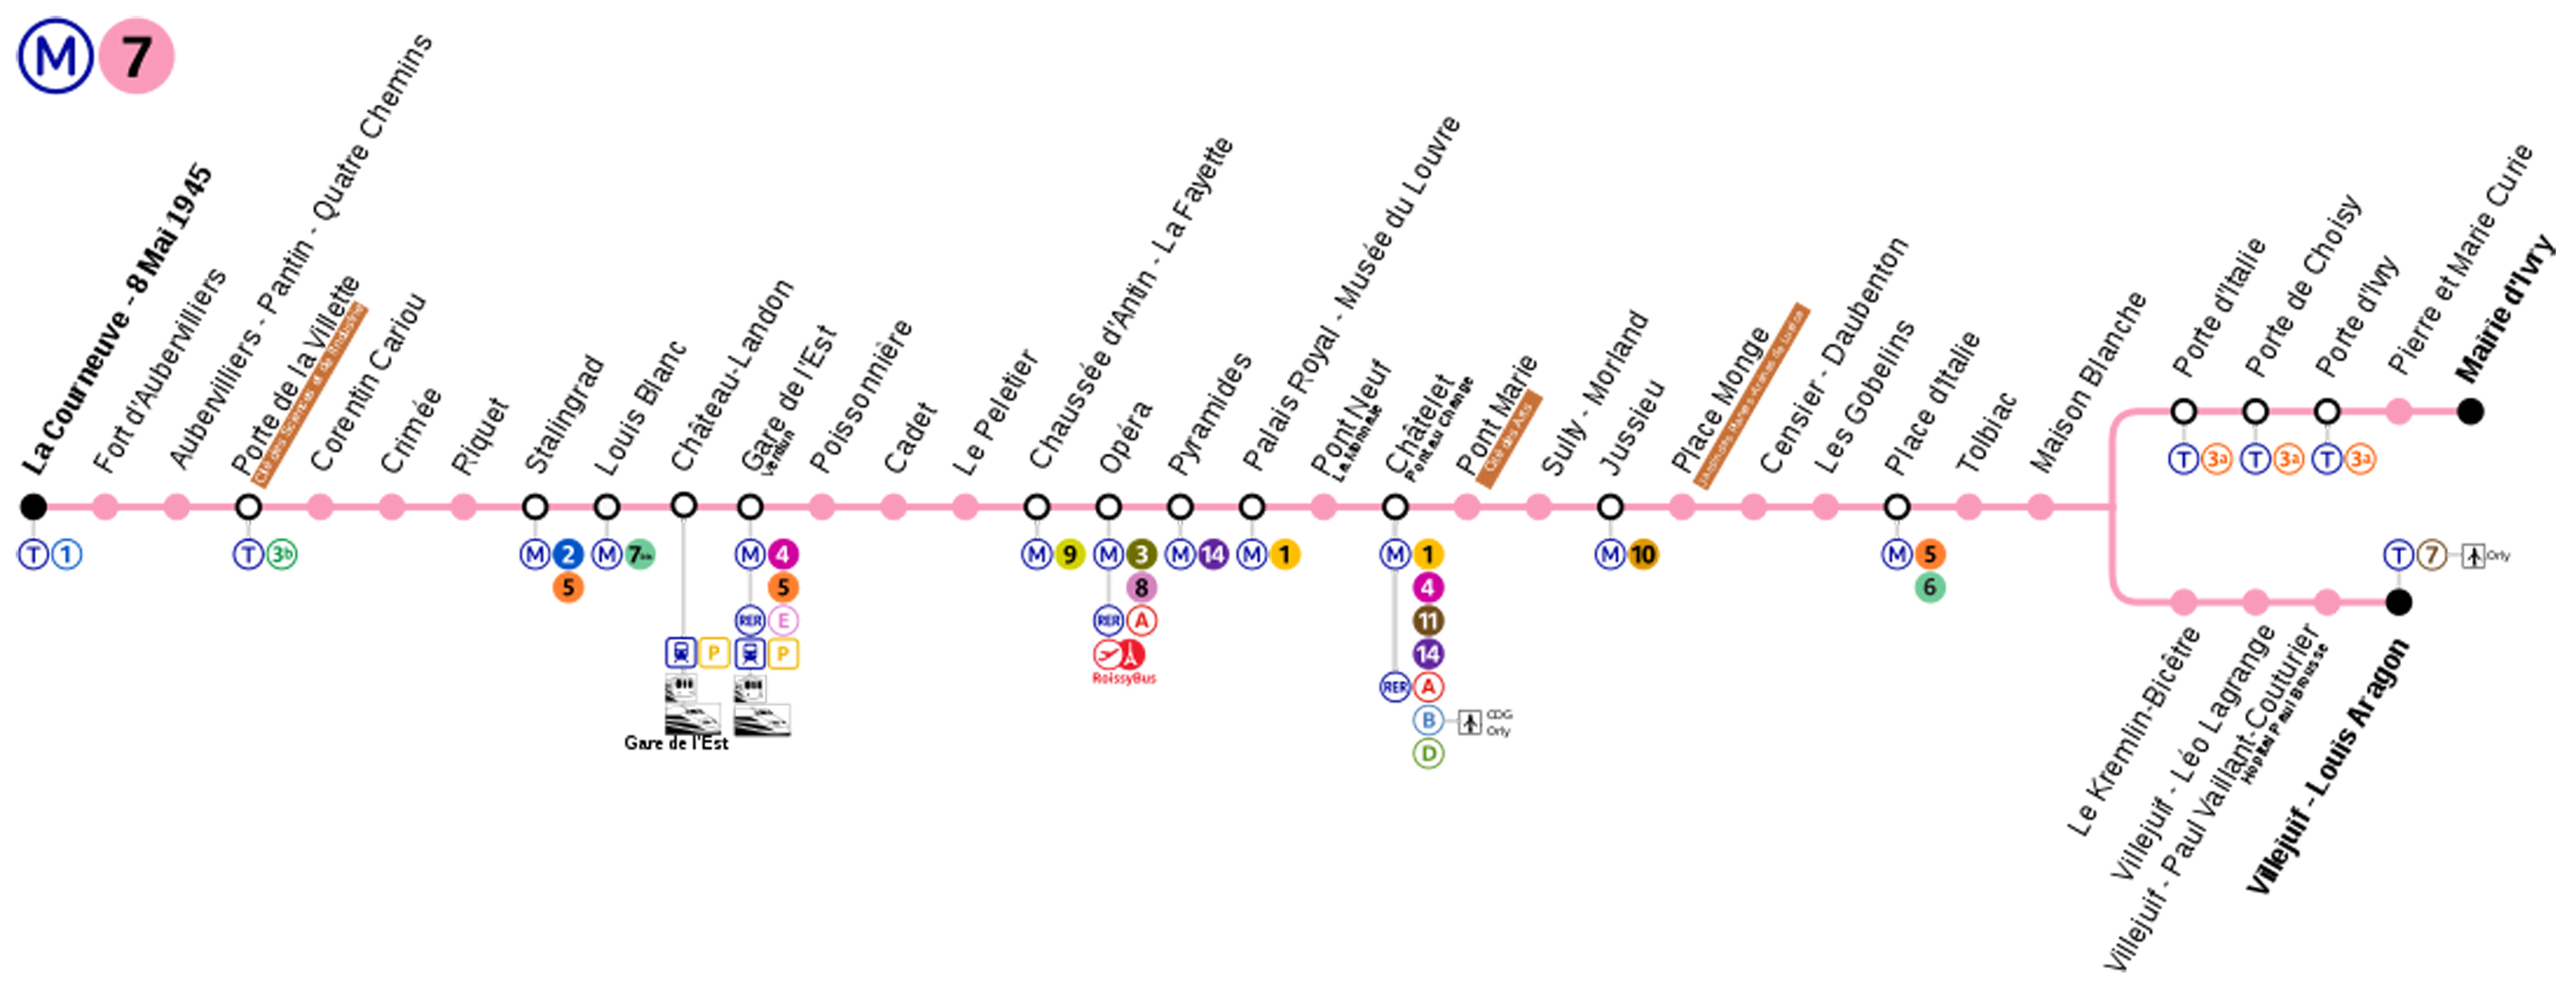 Plan du Métro Ligne 7 - Arrêt Chatelet